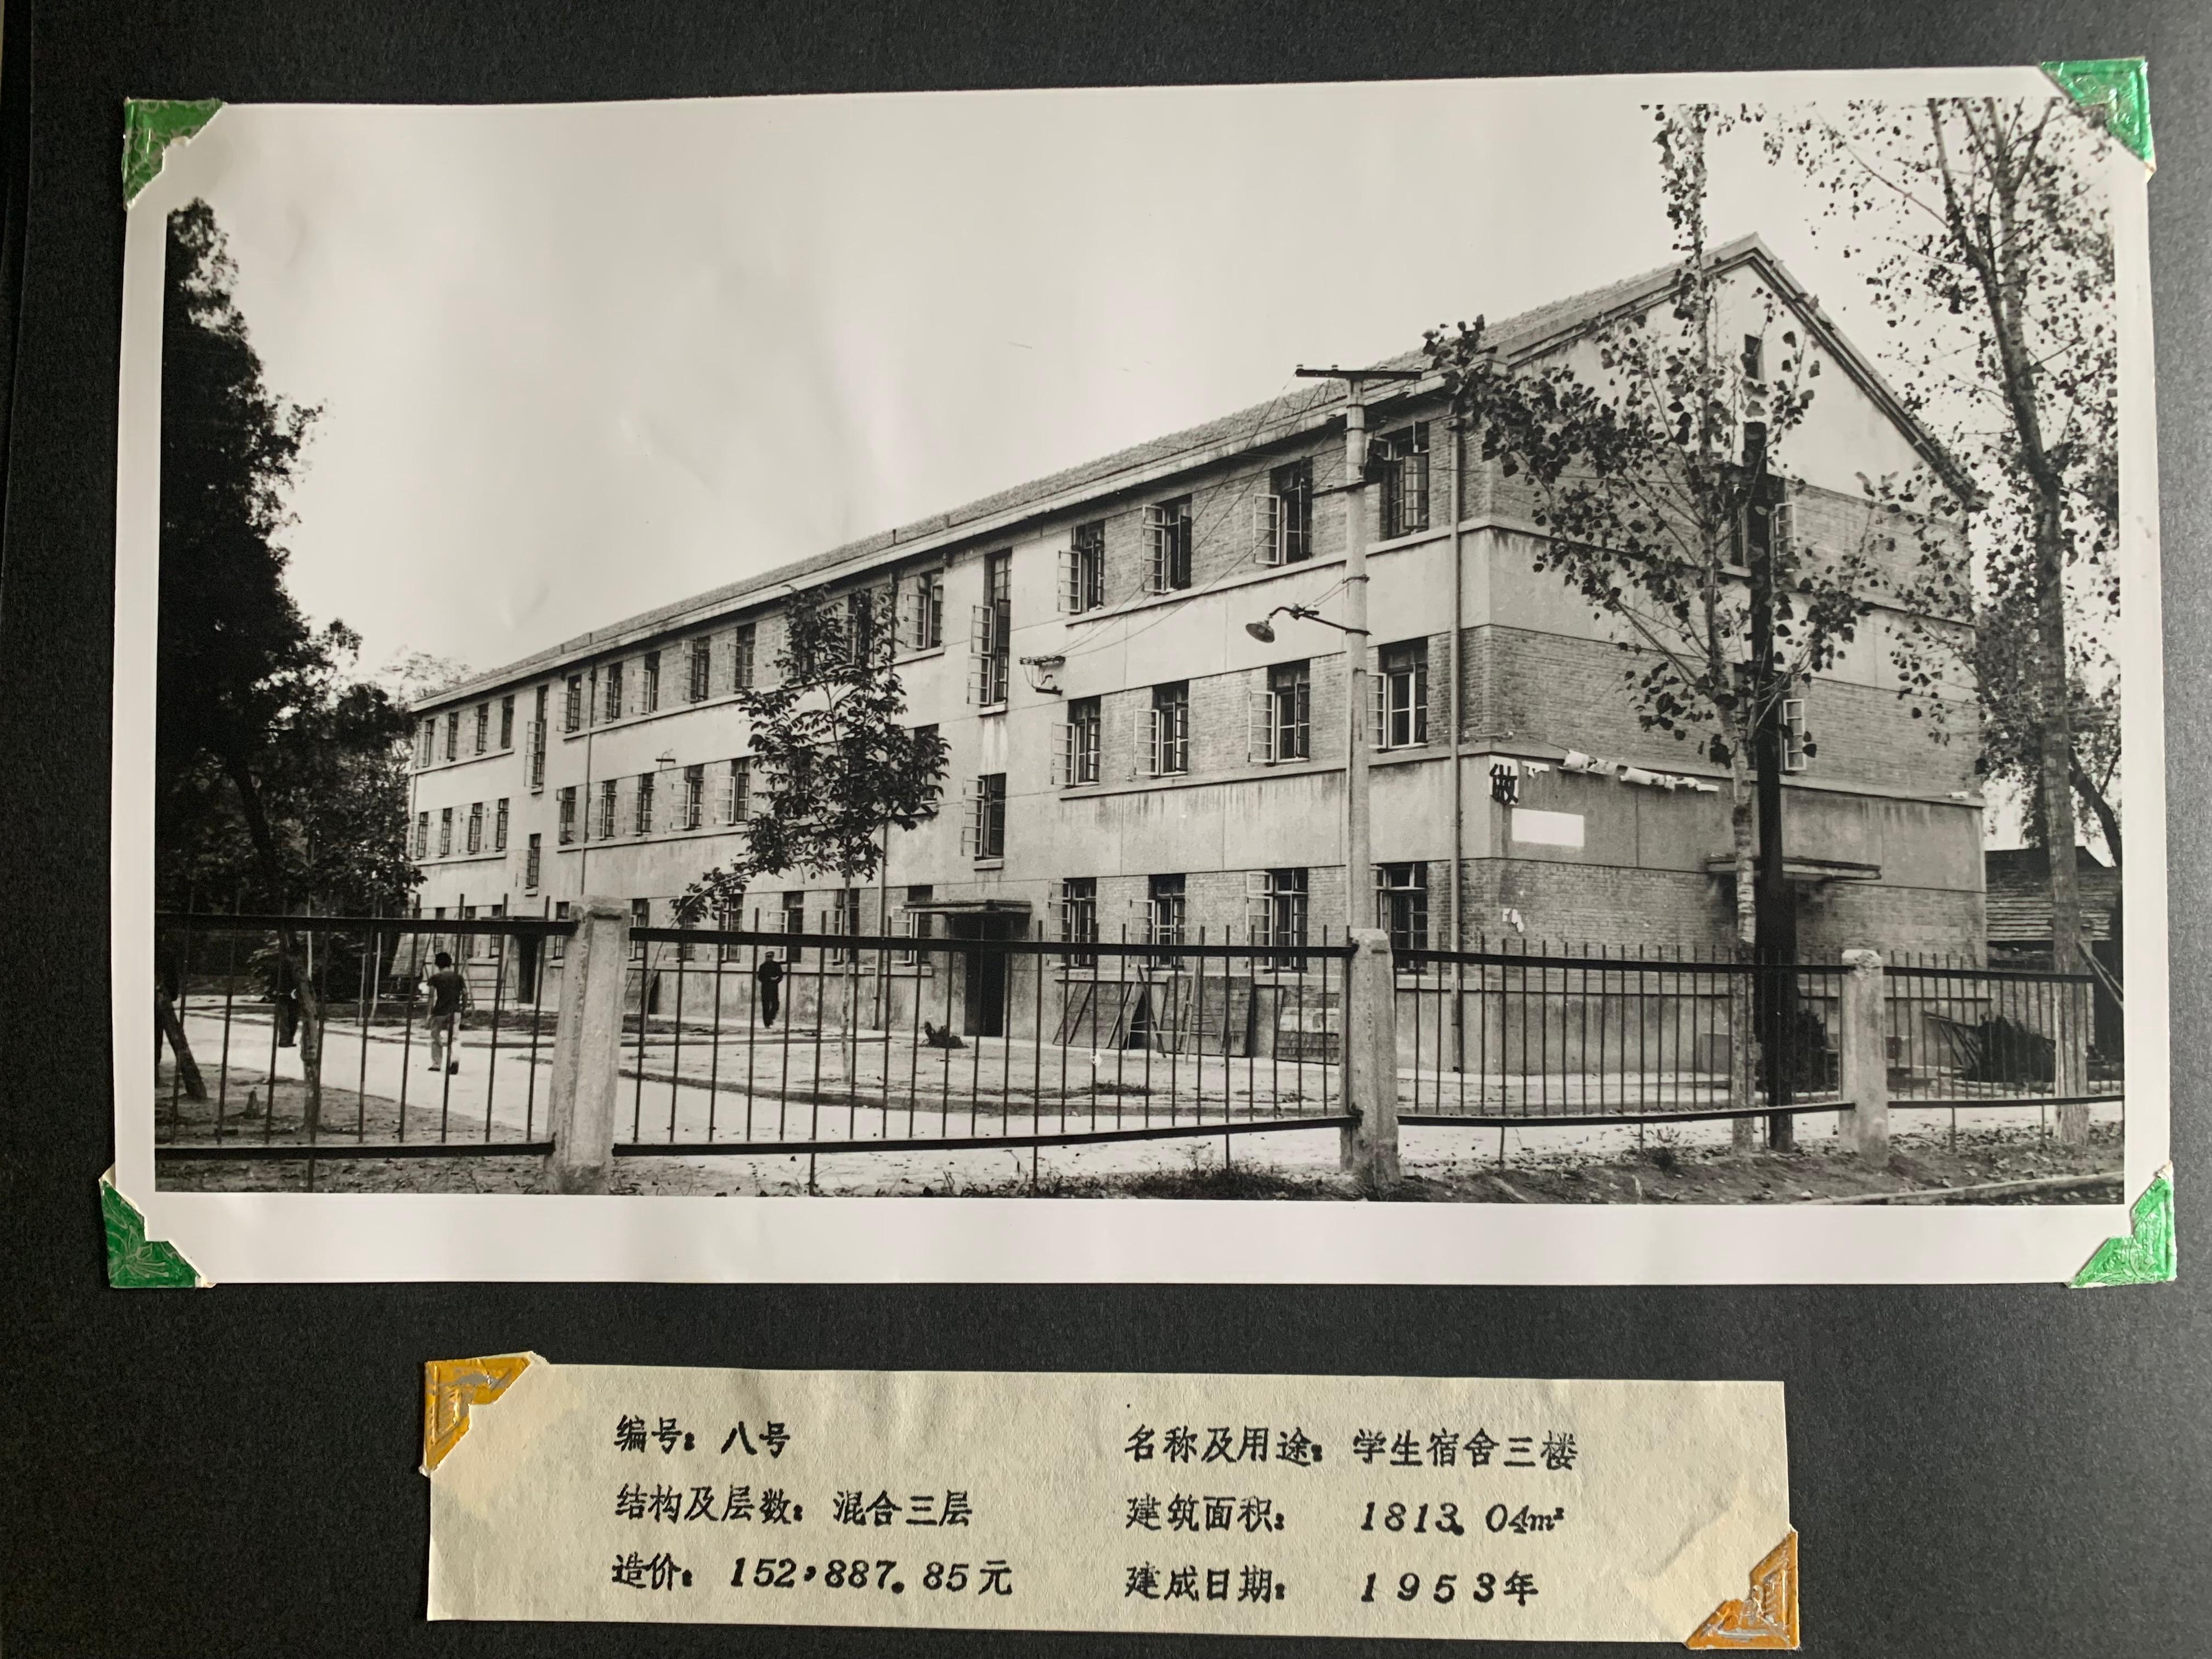 1953年建成的雁塔校区学生宿舍三号楼1.JPG